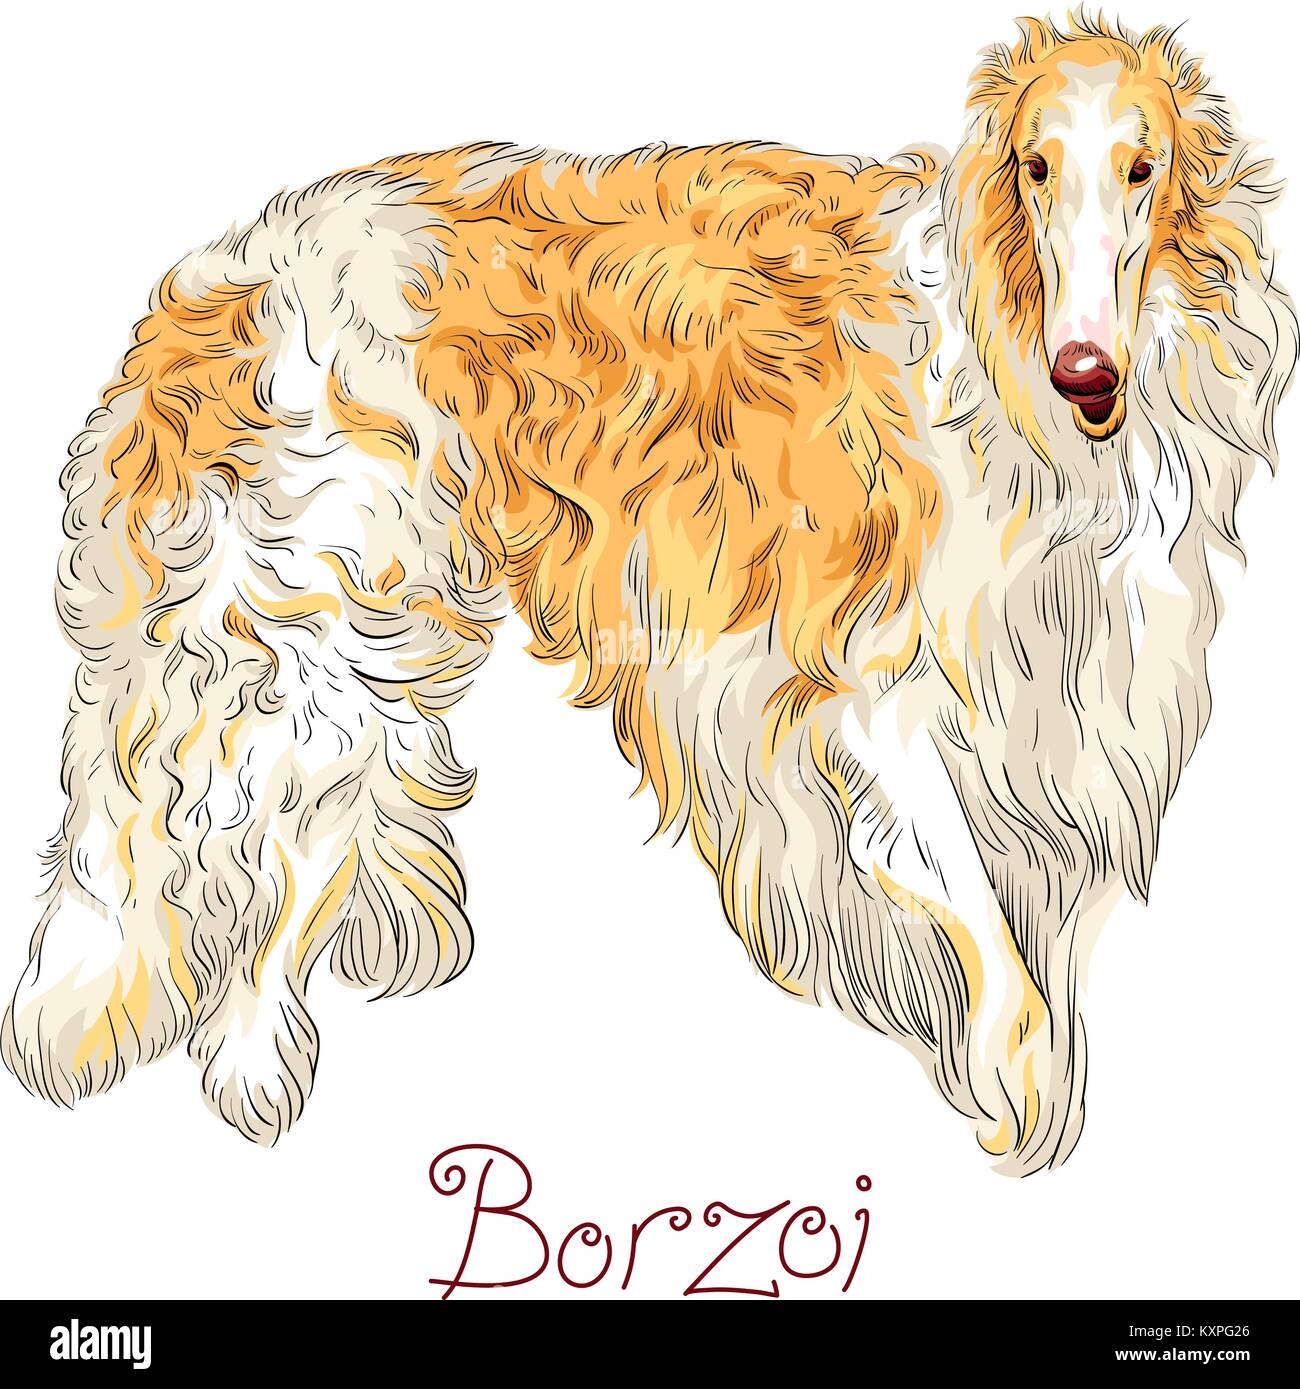 Vector Borzoi Dog breed Stock Vector